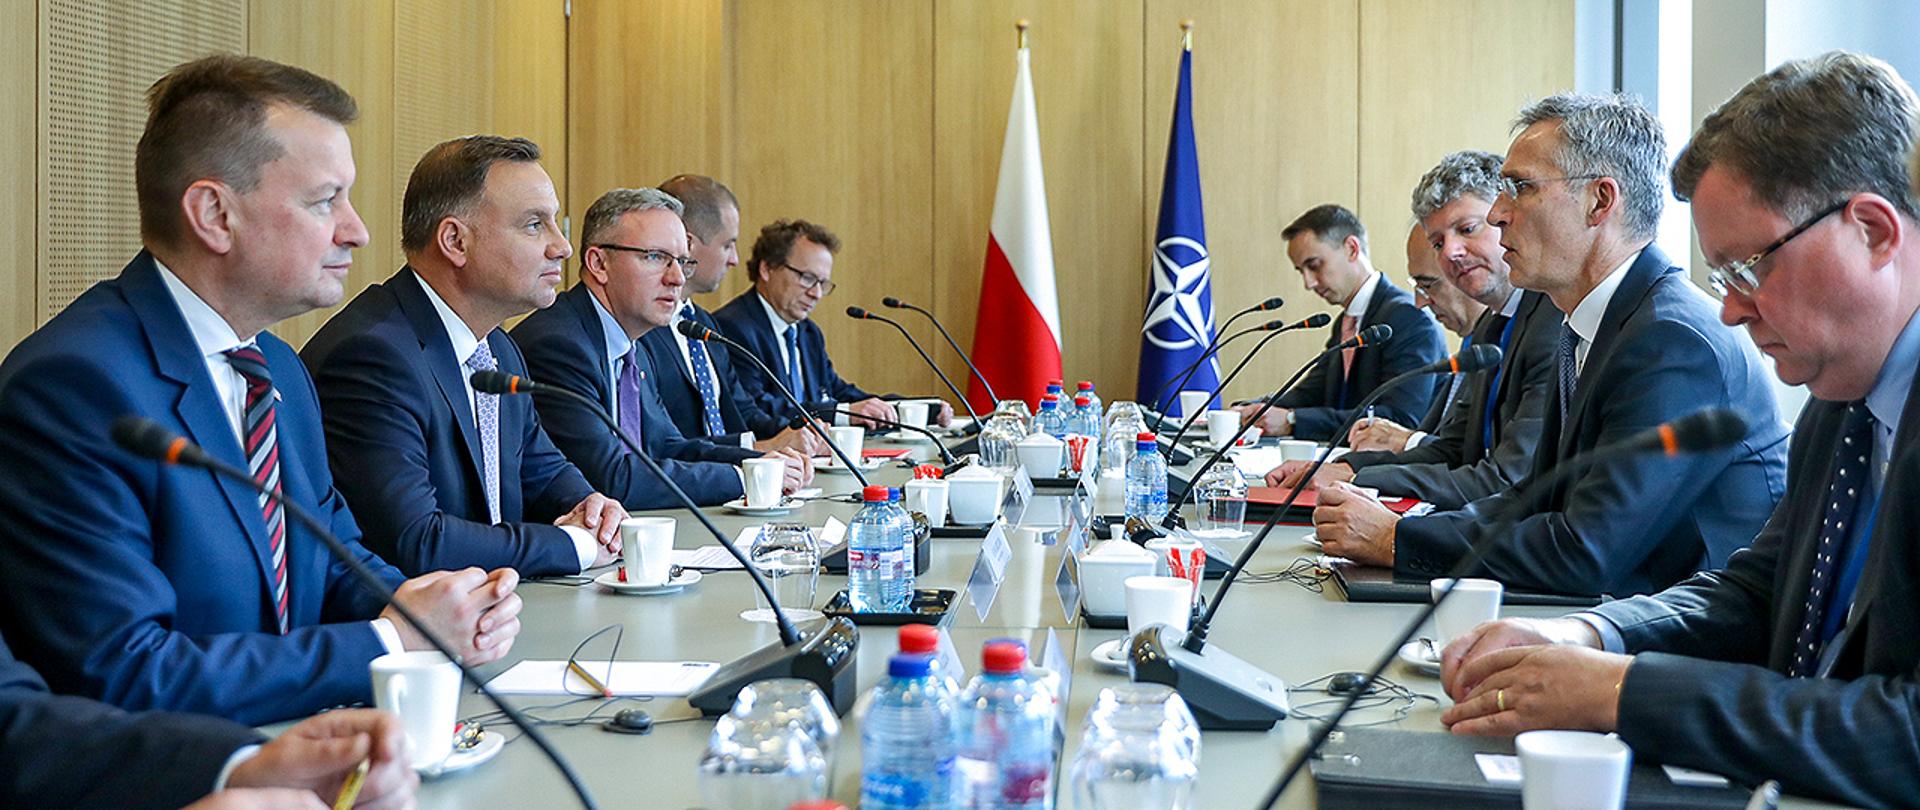 Spotkanie w Kwaterze Głównej NATO